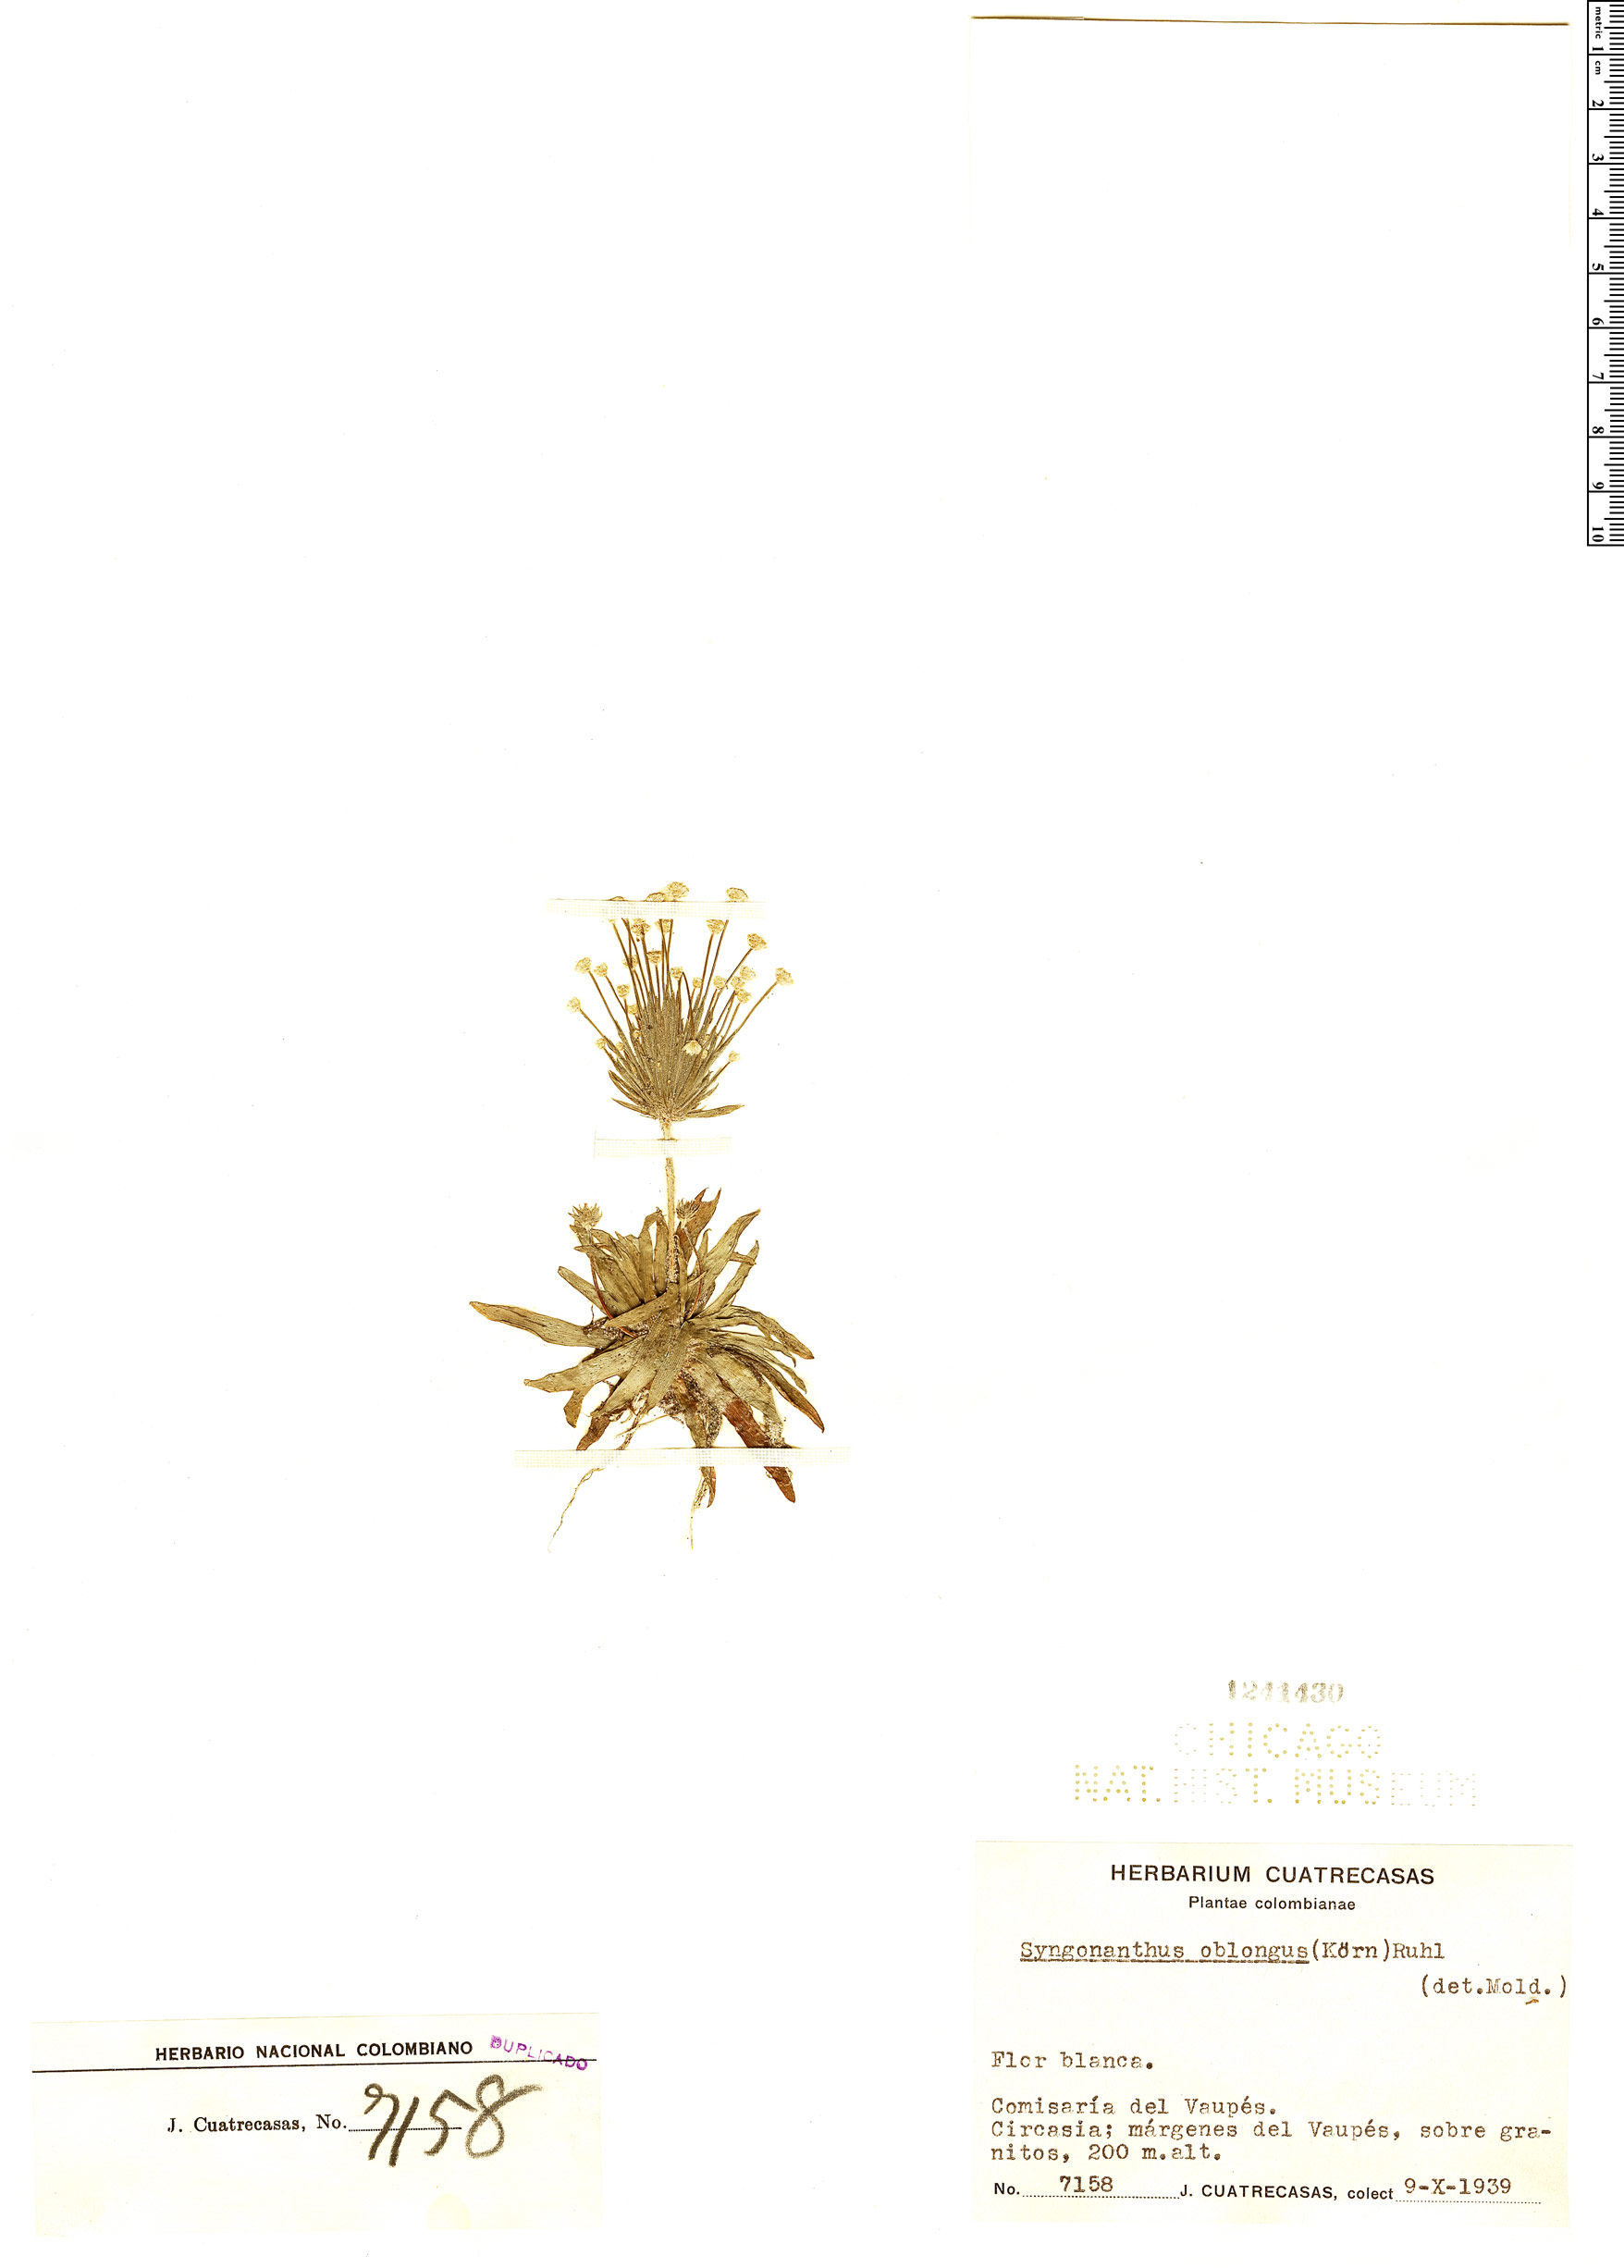 Syngonanthus oblongus image